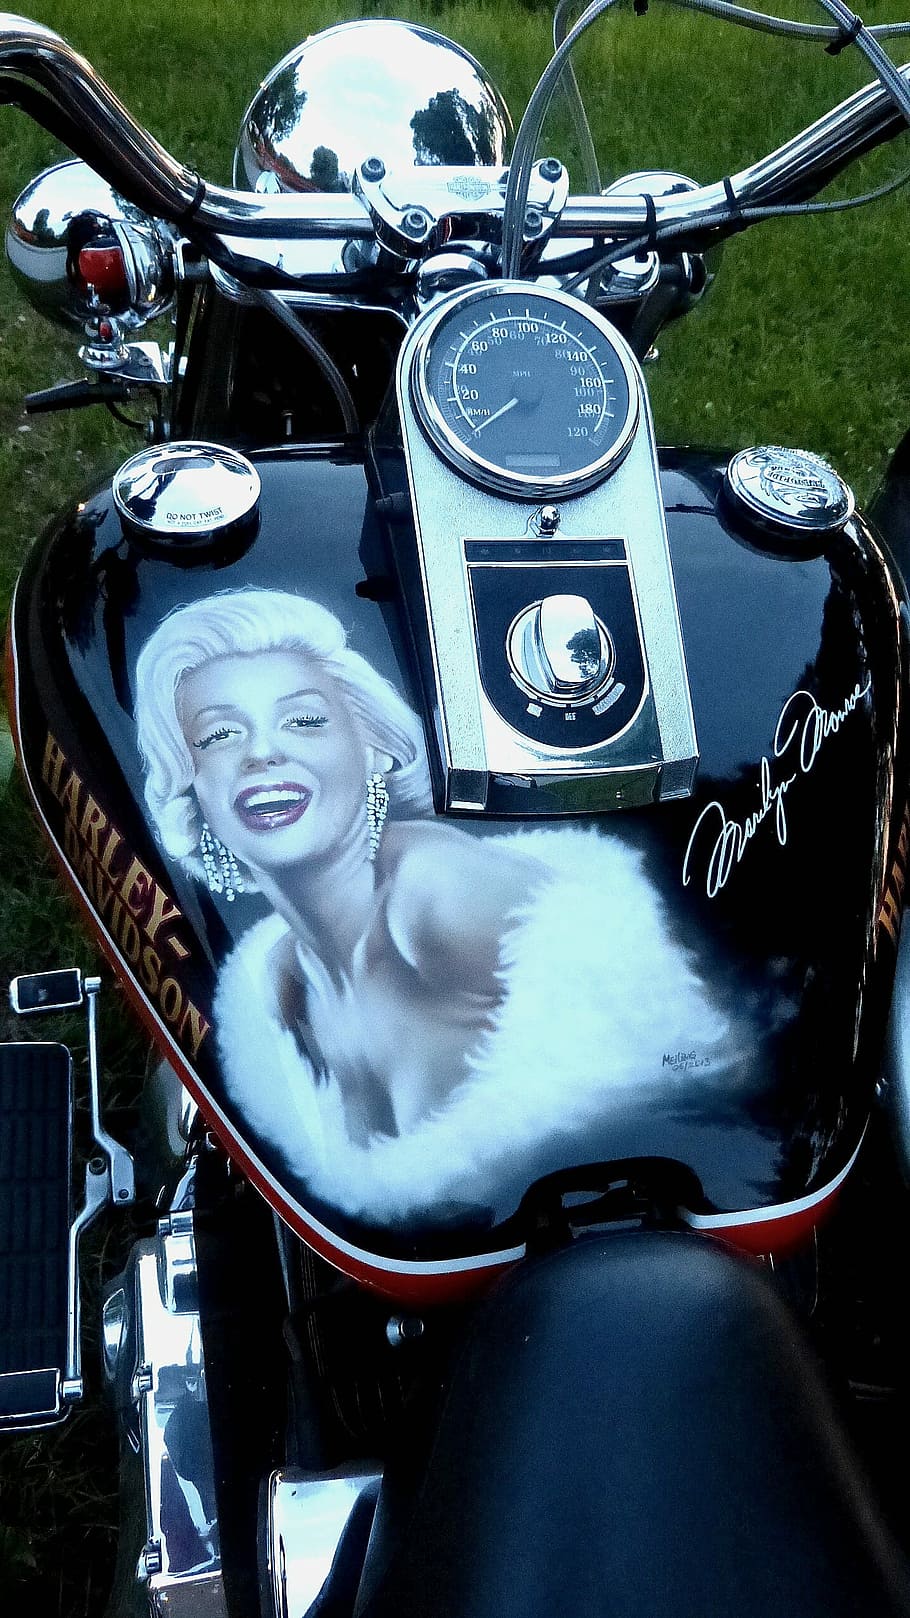 Harley Davidson, Marilyn Monroe, motocicleta, estilo retro, anticuado, al aire libre, día, parte del cuerpo humano, modo de transporte, transporte